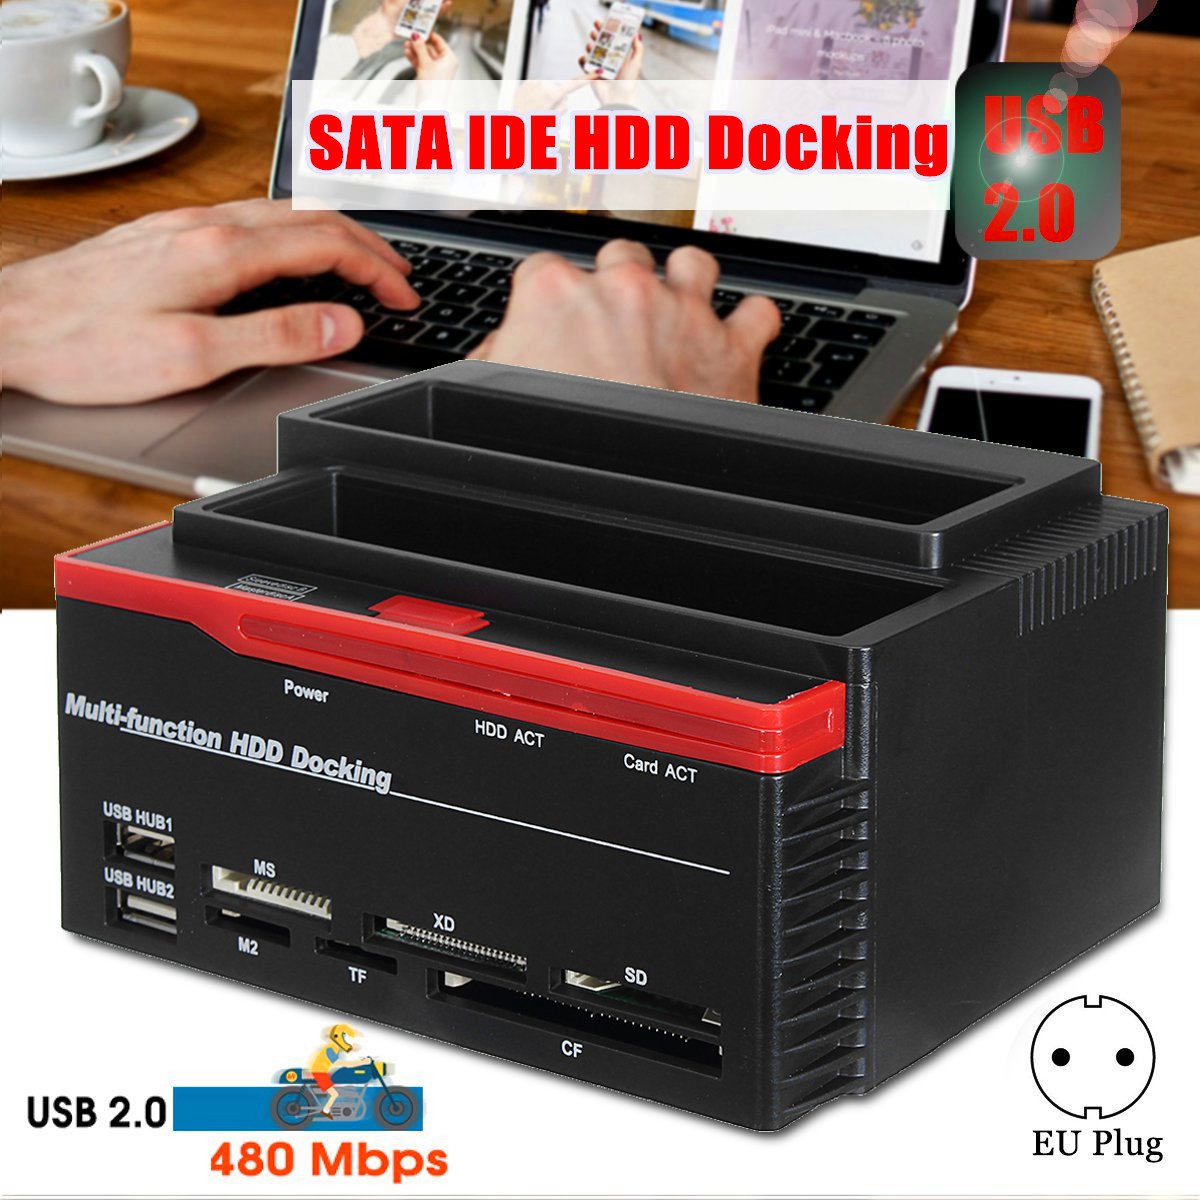 2535quot-SATA-IDE-HDD-Docking-Station-Clone-Backup-Hard-Drive-Enclosure-USB20-HUB-Card-Reader-EU-1345958